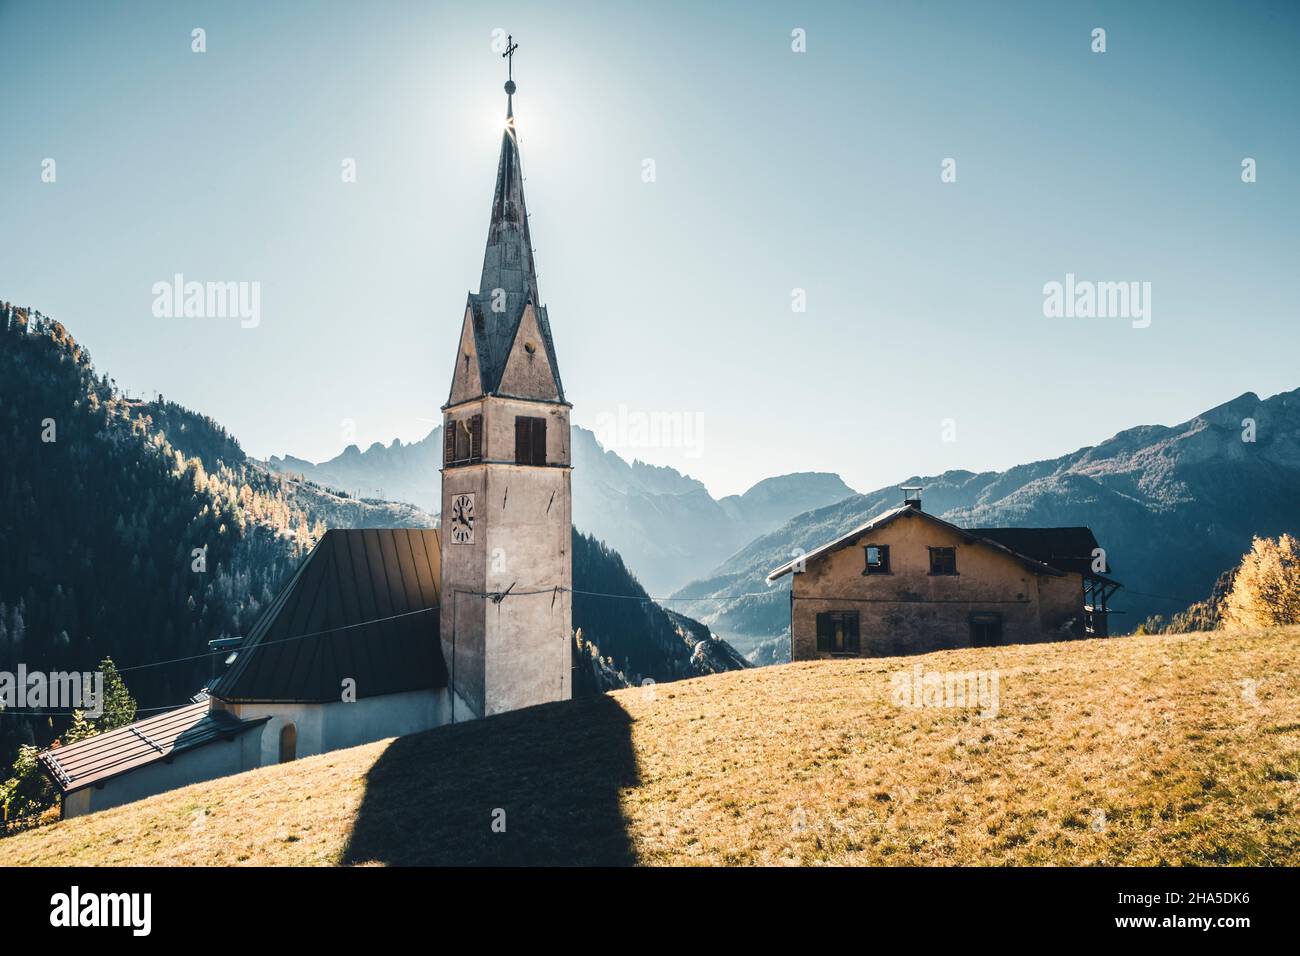 the church of larzonei,village in the municipality of livinallongo del col di lana,belluno,veneto,italy Stock Photo